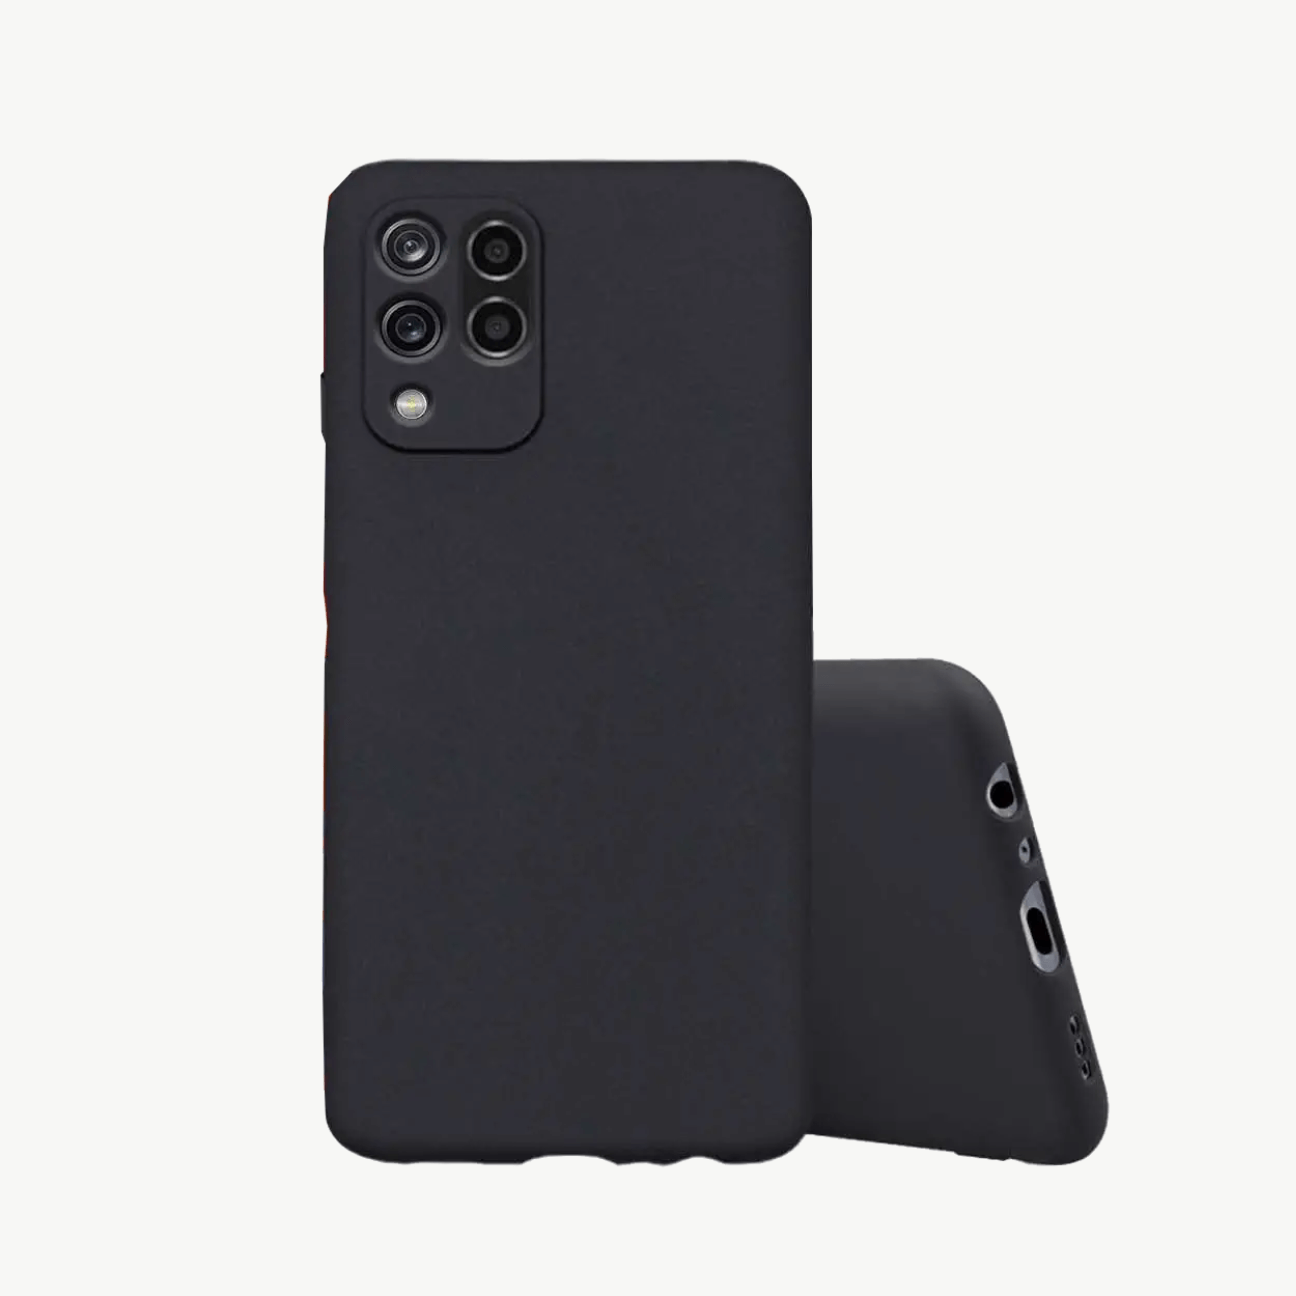 Realme X3 (2020) Black Soft Silicone Phone Case